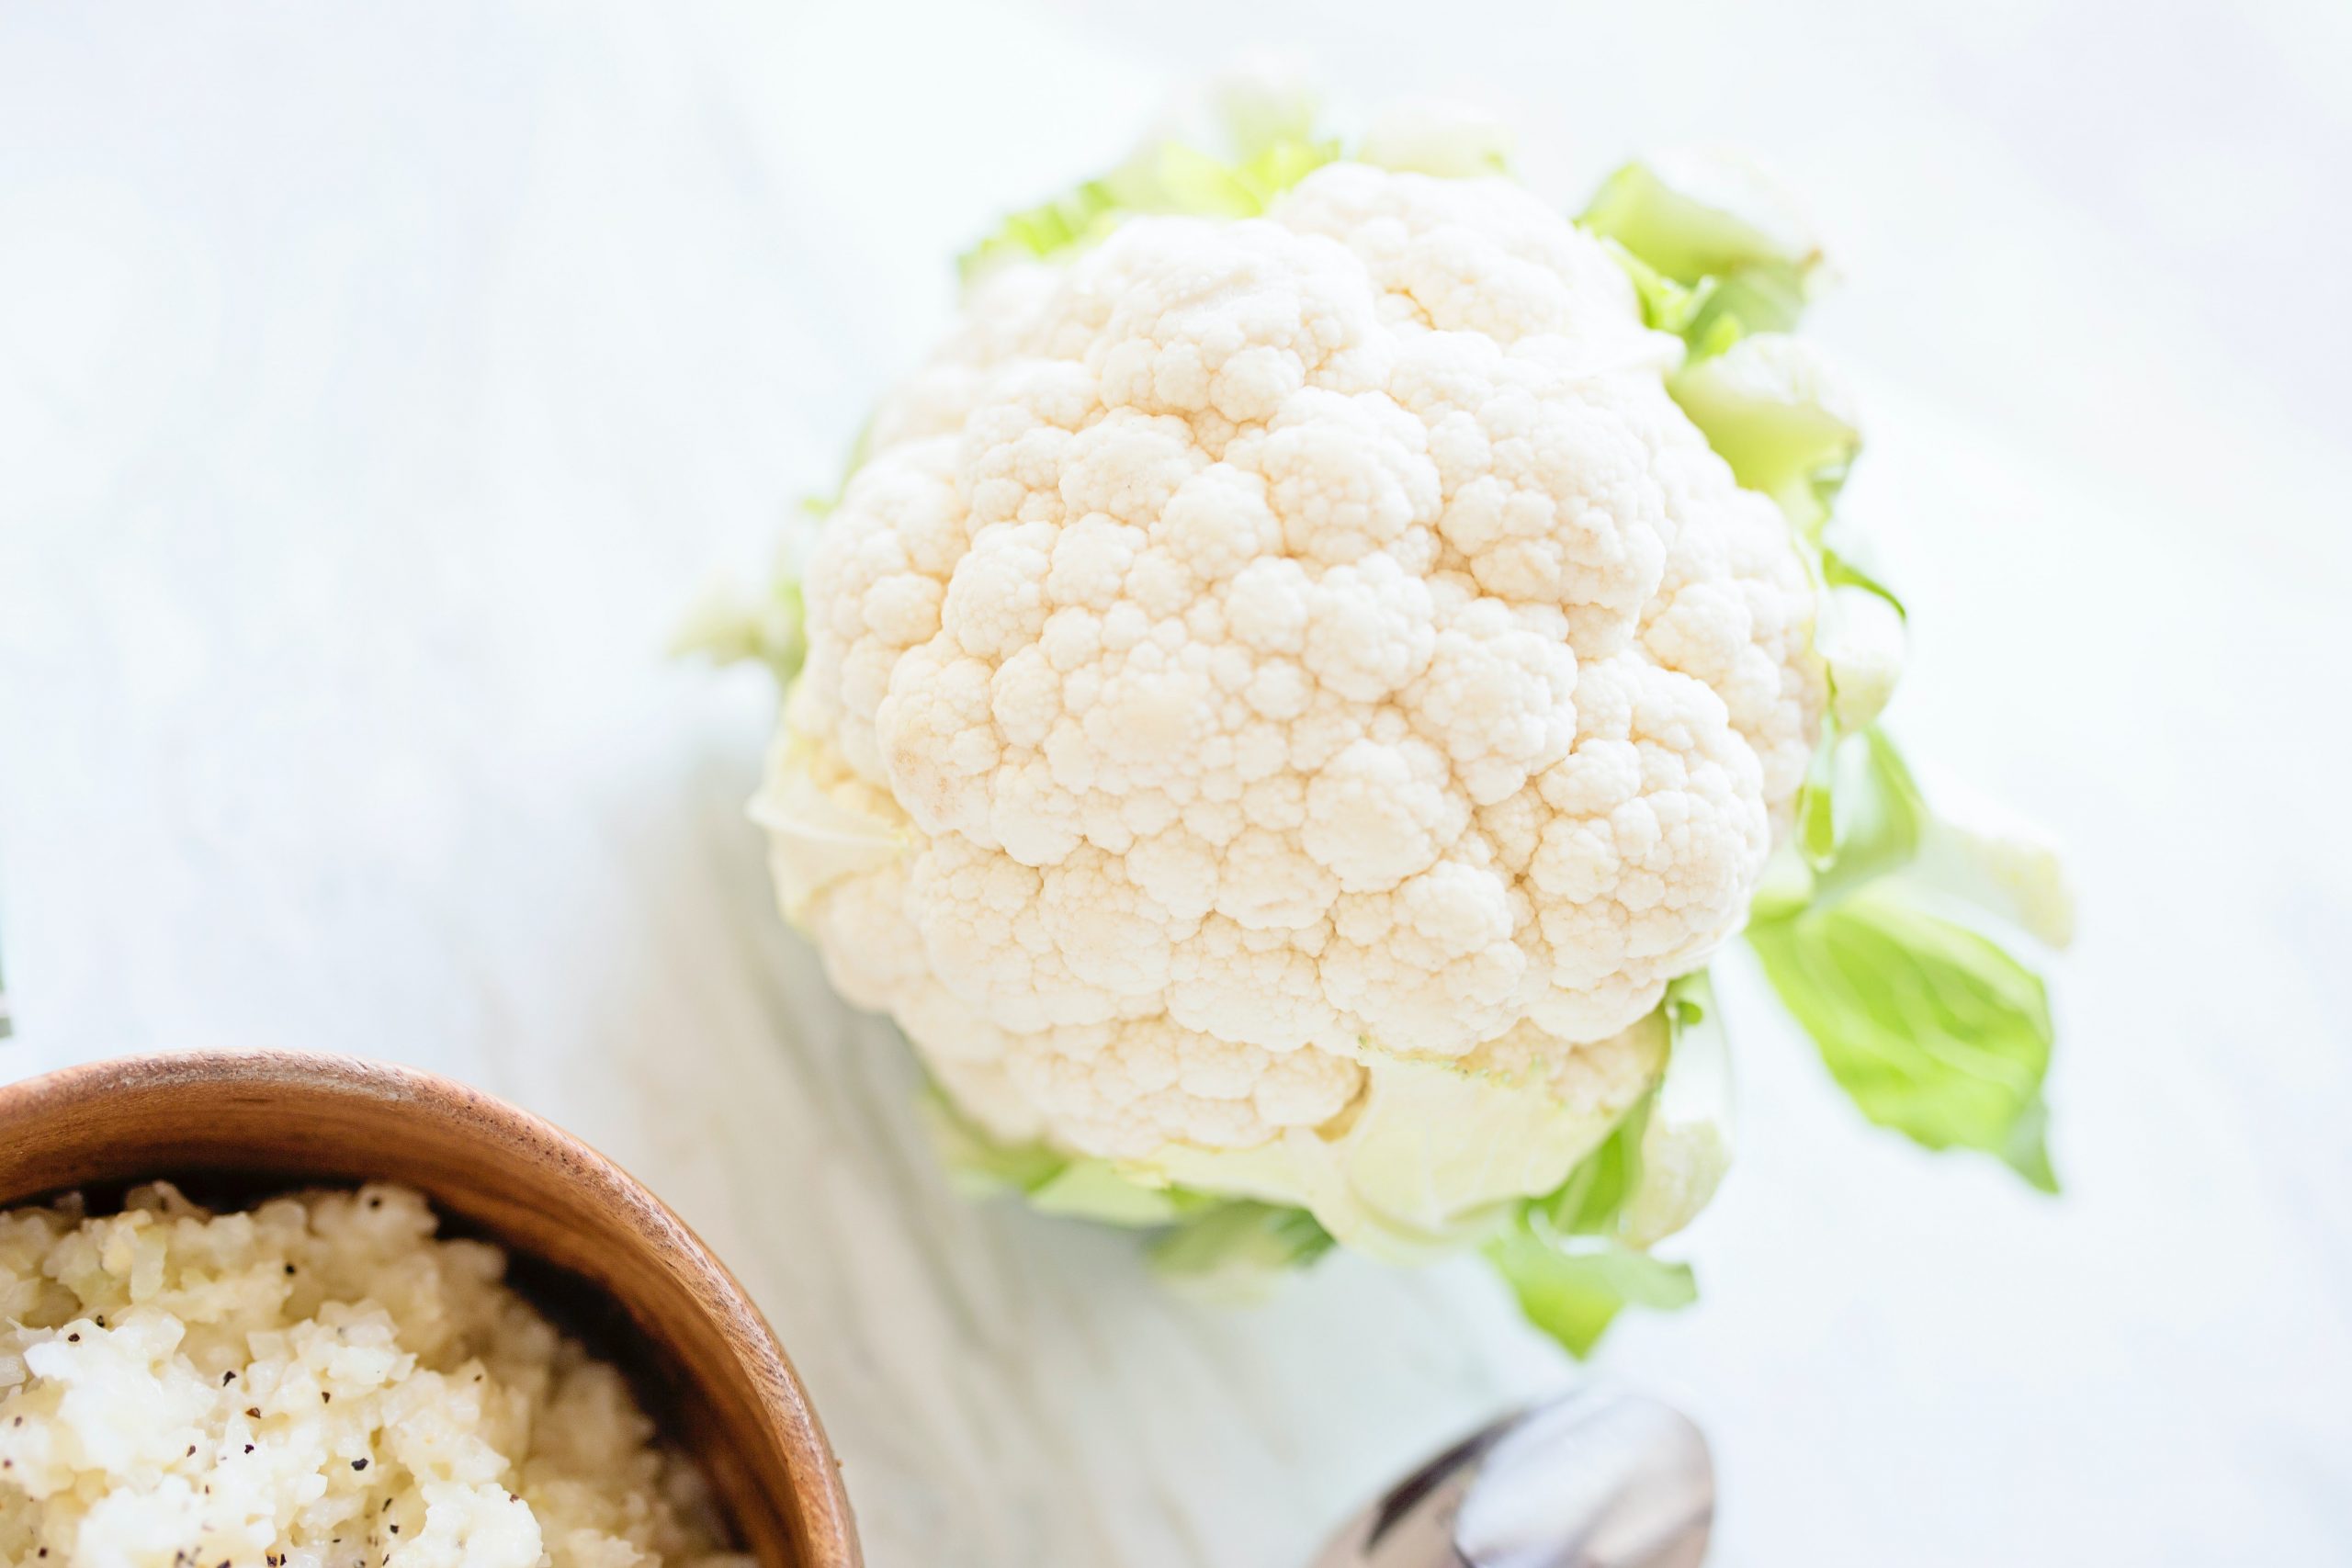 Does Cauliflower Grow Underground?